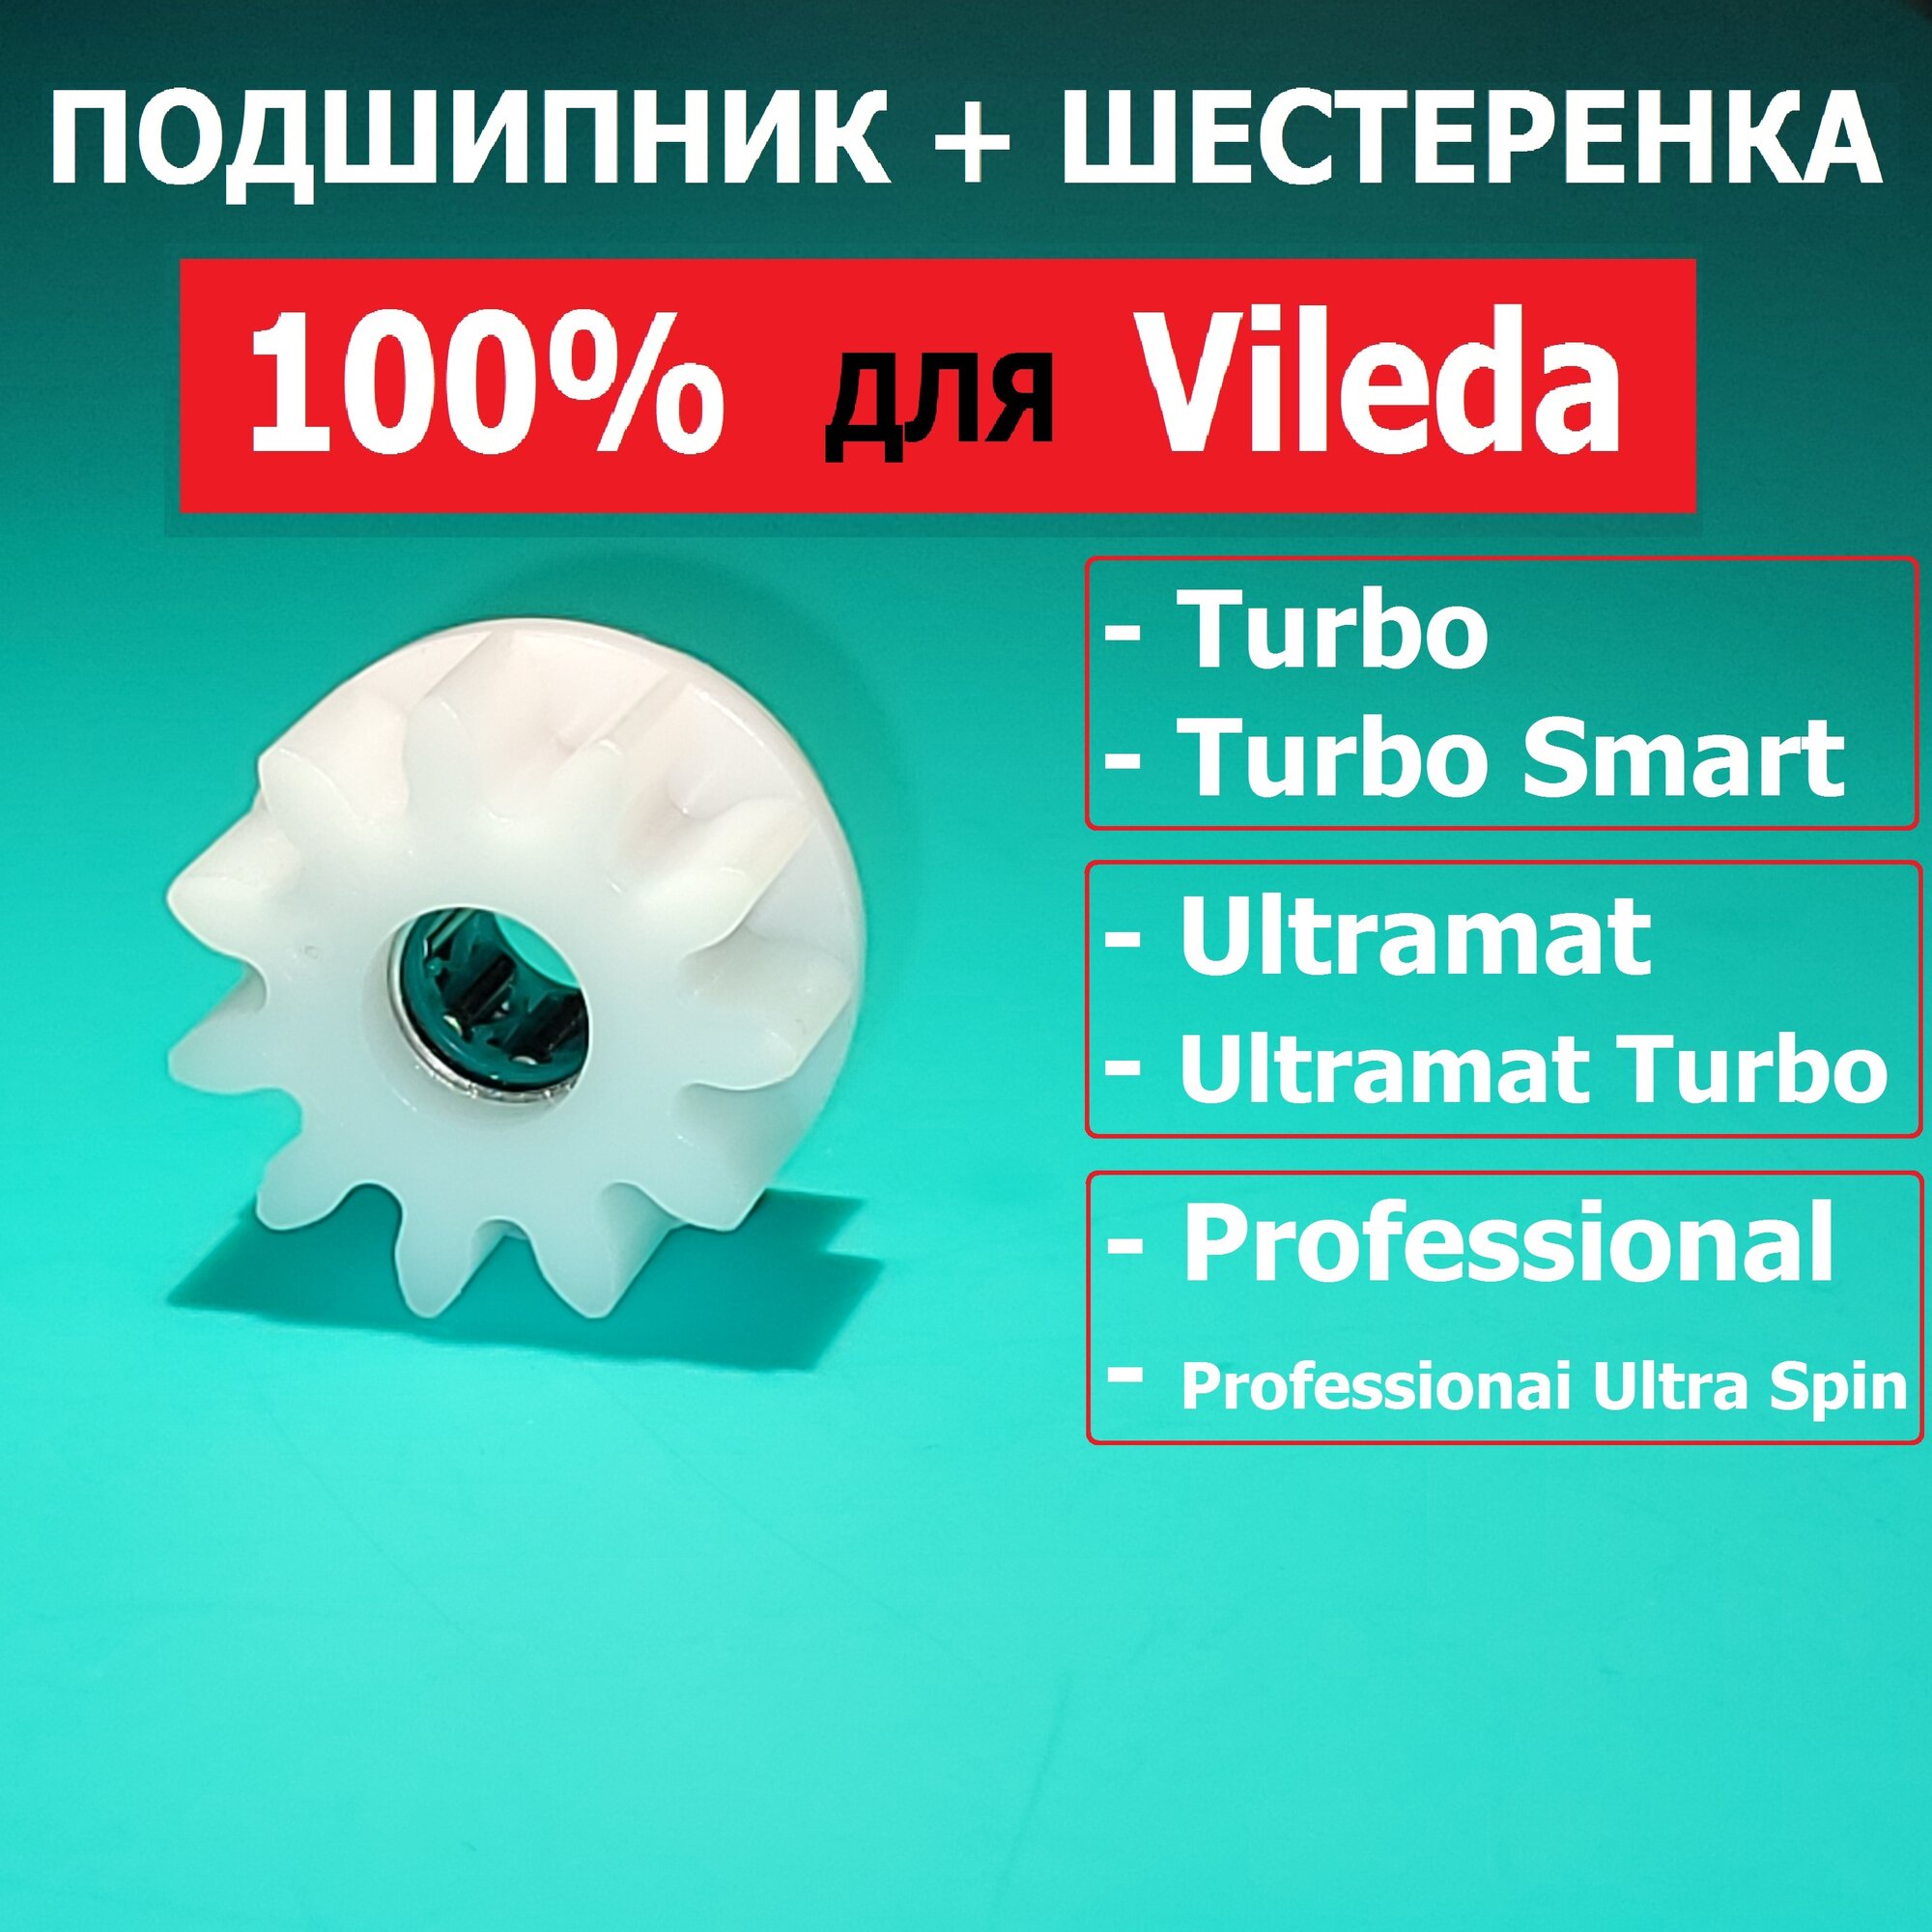 Подшипник для Vileda Turbo Professional Ultramat 1 шт+ шестеренка в сборе.